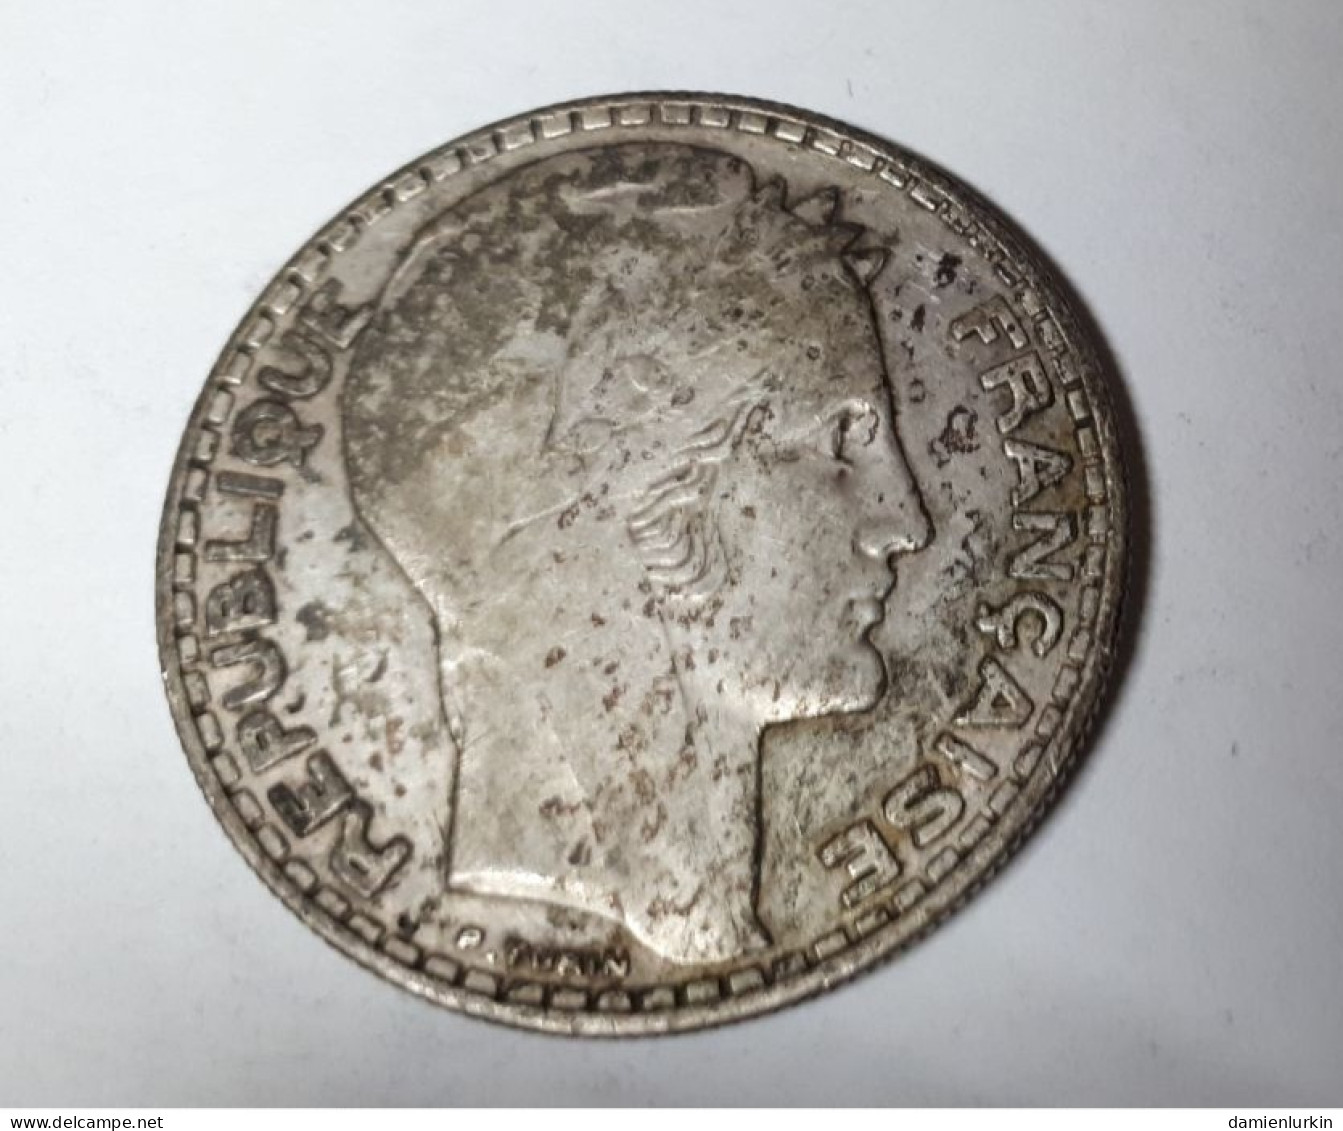 FRANCE 20 FRANCS TURIN 1933 ARGENT - 20 Francs